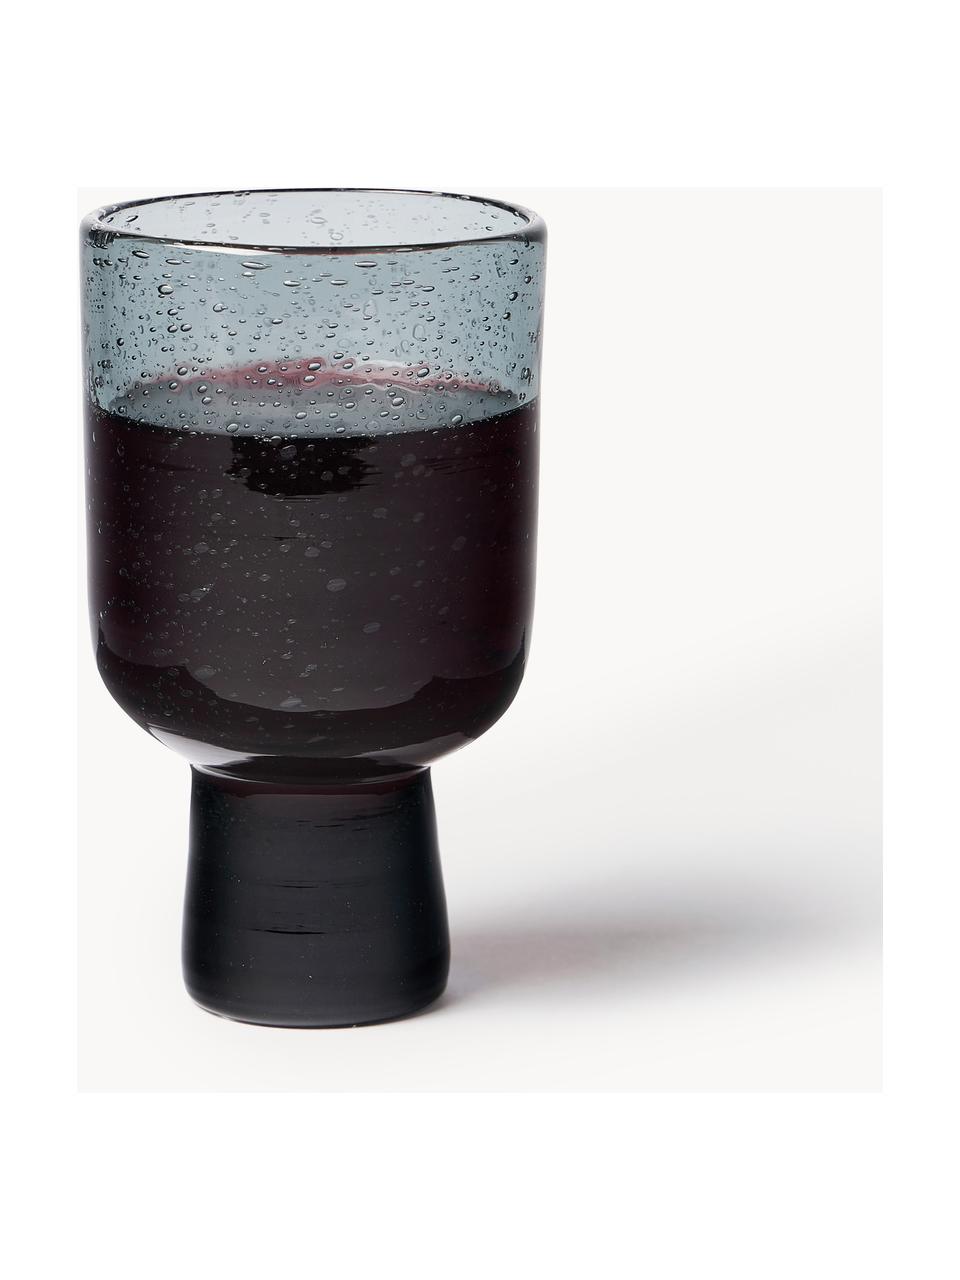 Handgefertigte Weingläser Bari mit Luftbläschen, 6 Stück, Glas, Grau, Ø 7 x H 12 cm, 250 ml